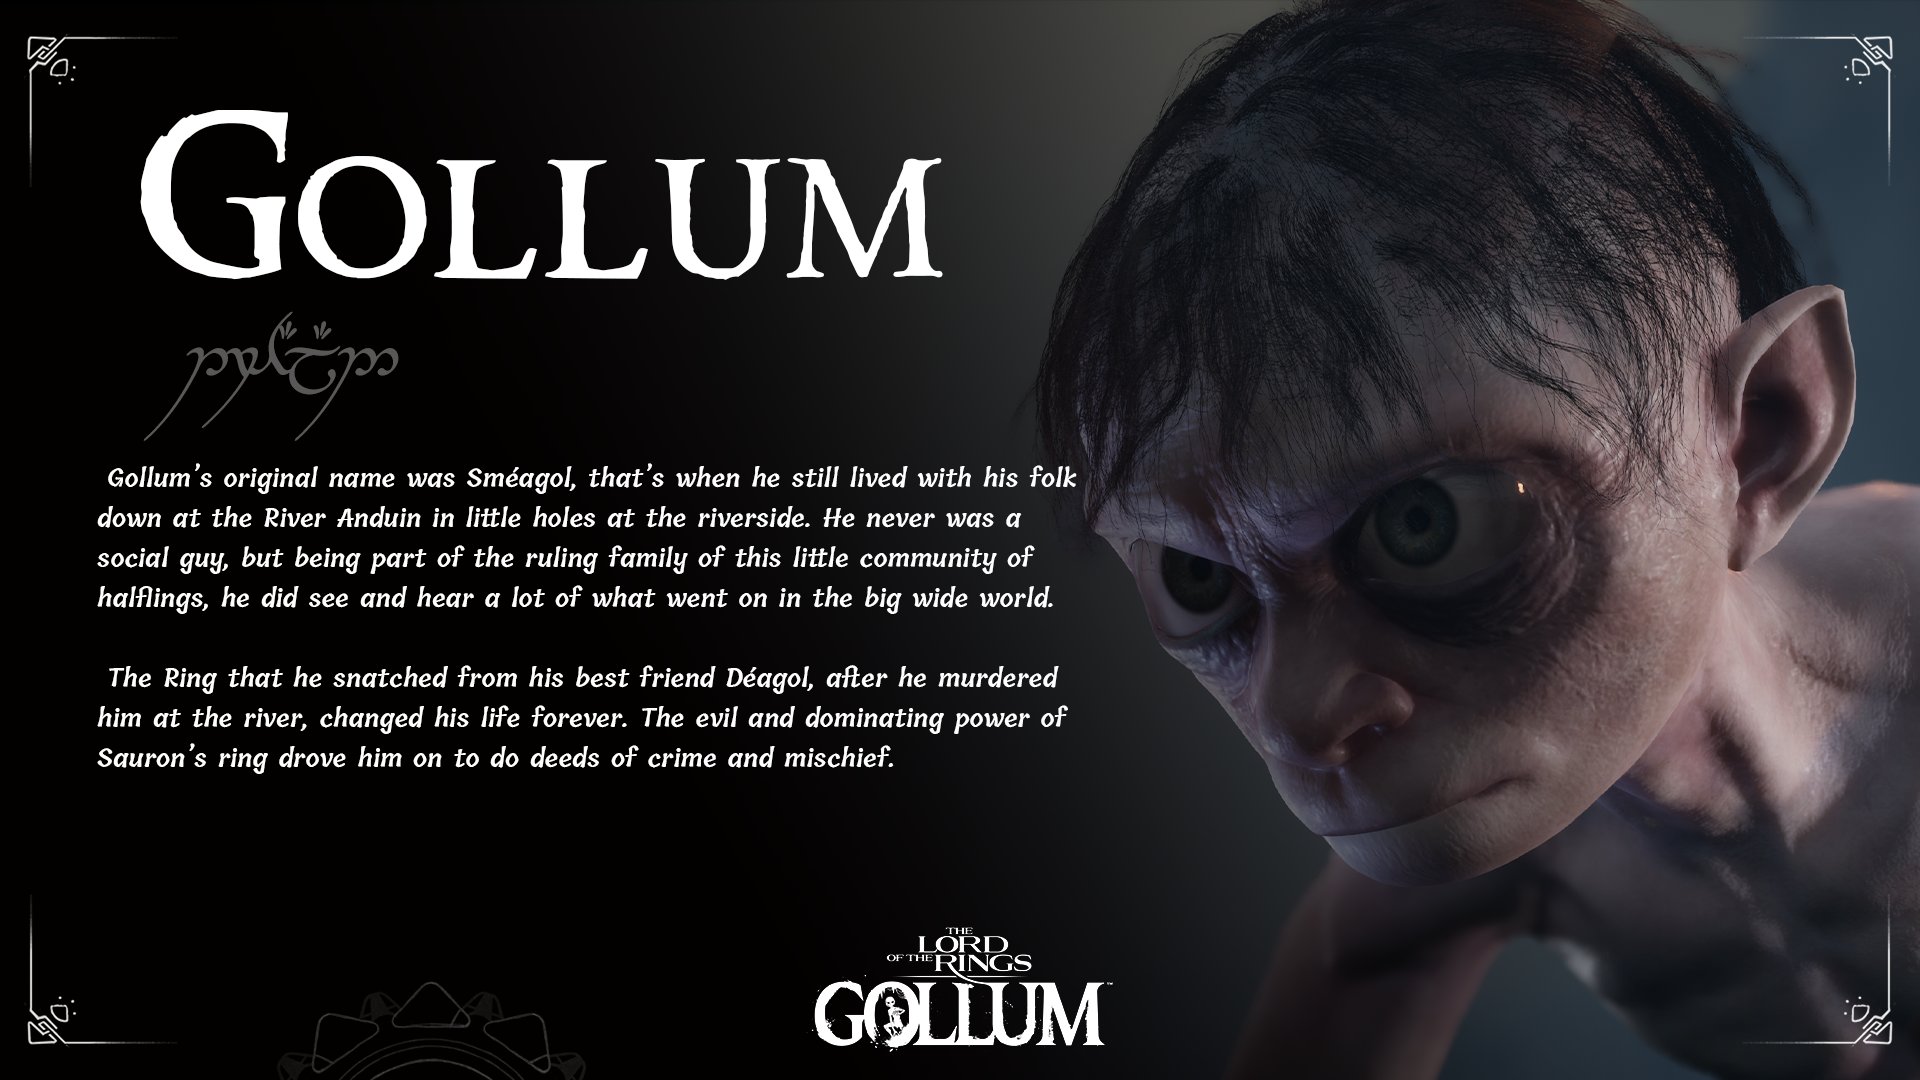 Jogo do Gollum tem pior nota no Metacritic em 2023 (até agora)